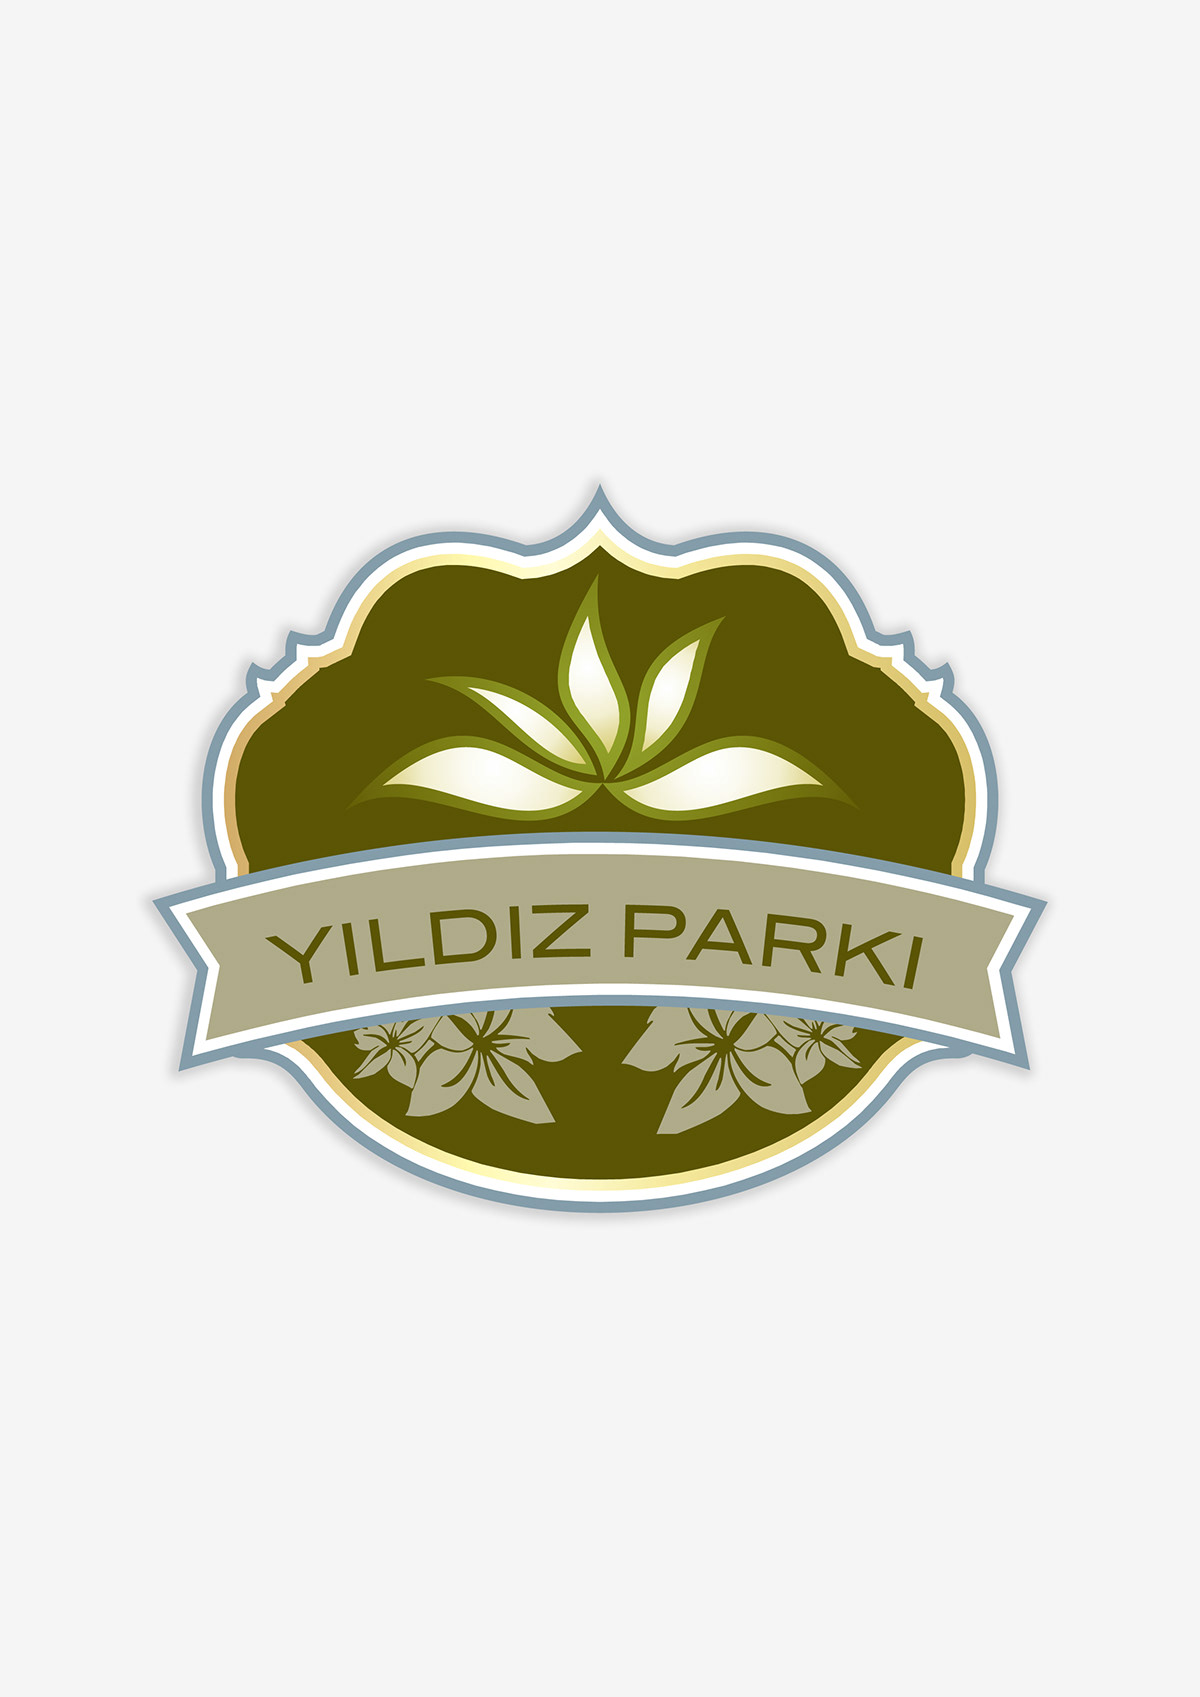 Yıldız Park  logo promotion poster brand identity